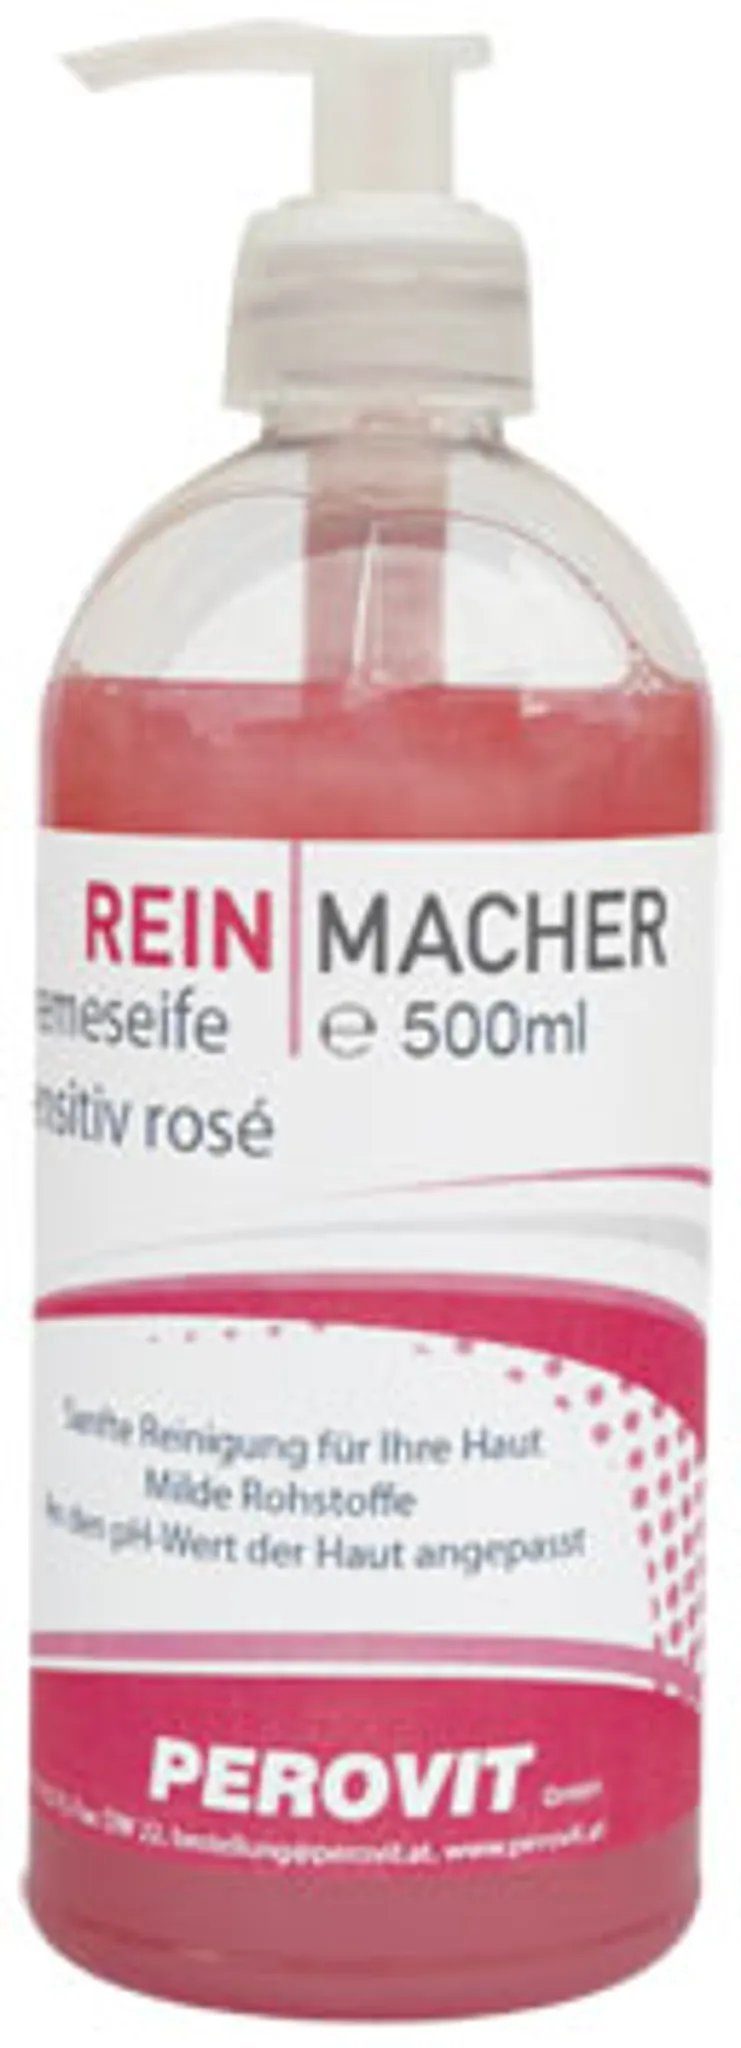 rose Handseife Reinmacher HCR Cremseife ml Sensitiv Hygiene 500